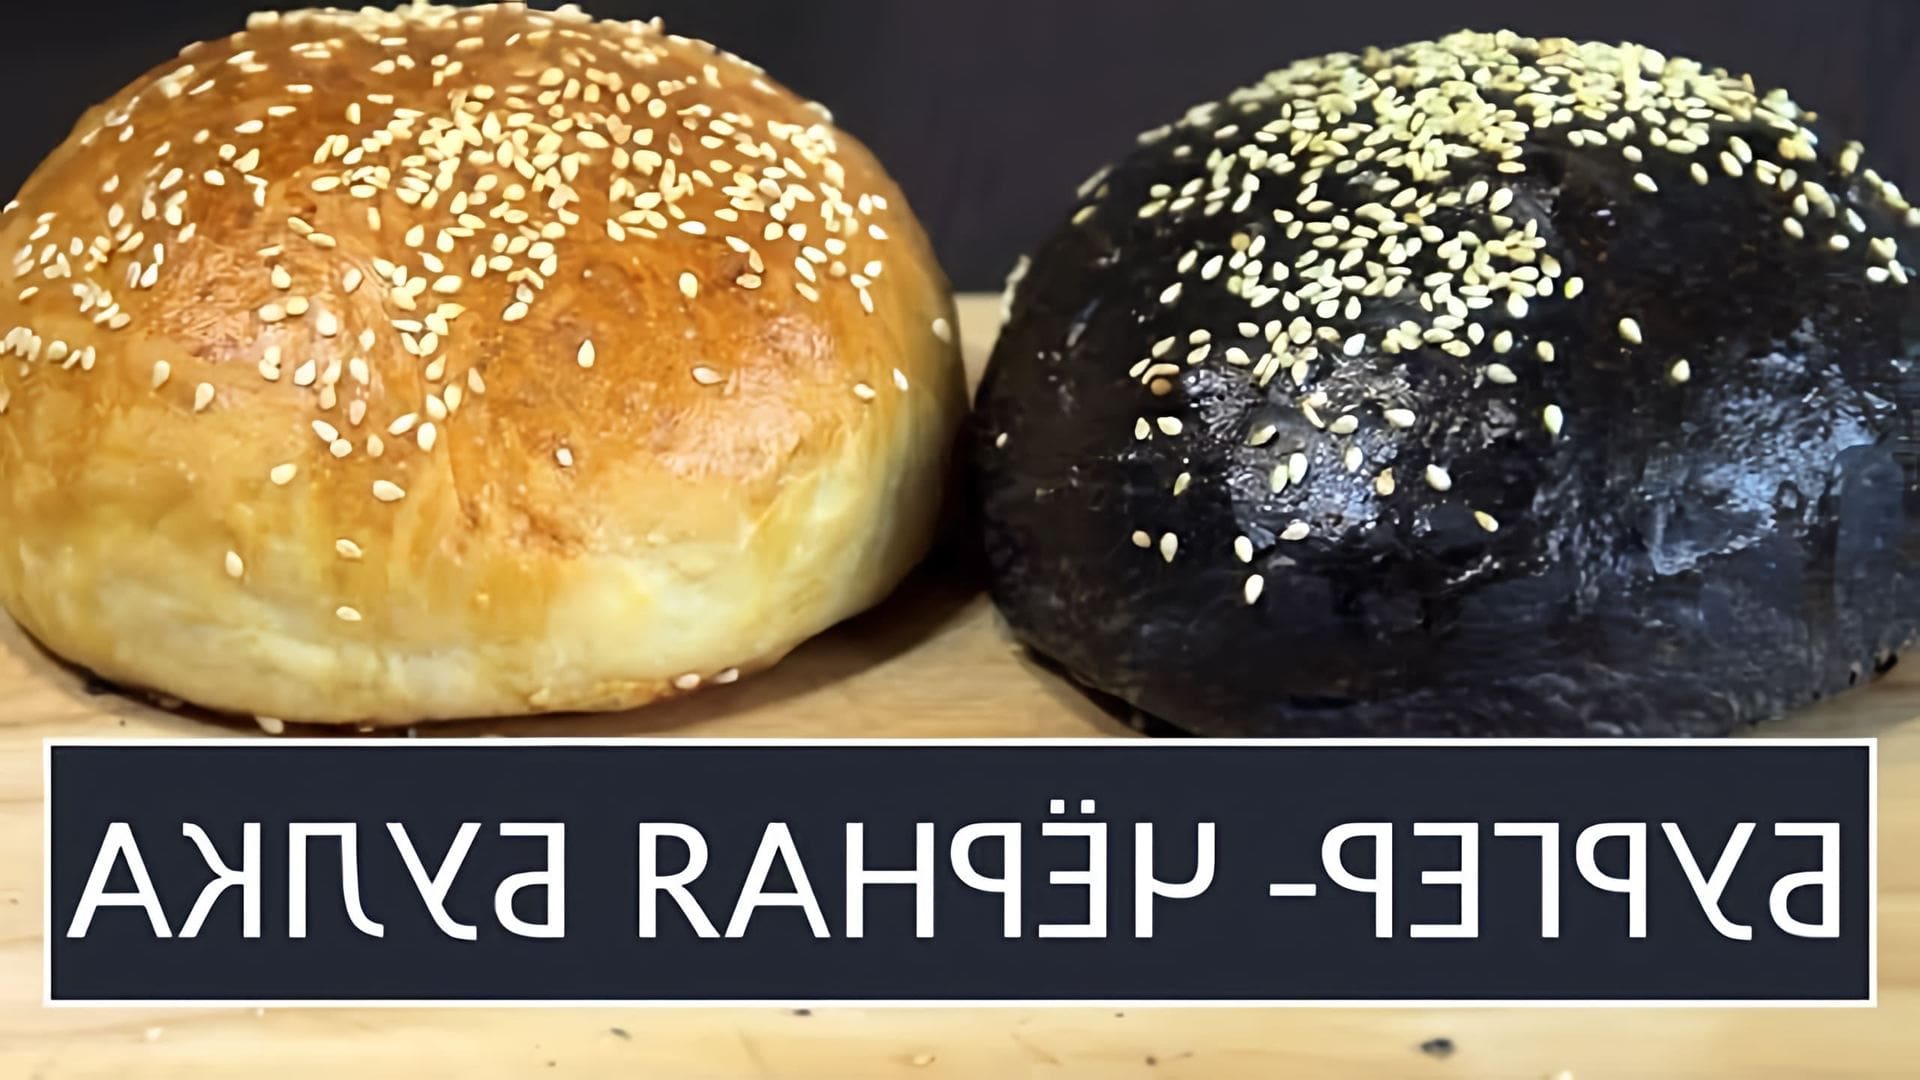 В этом видео демонстрируется рецепт приготовления черных булочек для бургеров